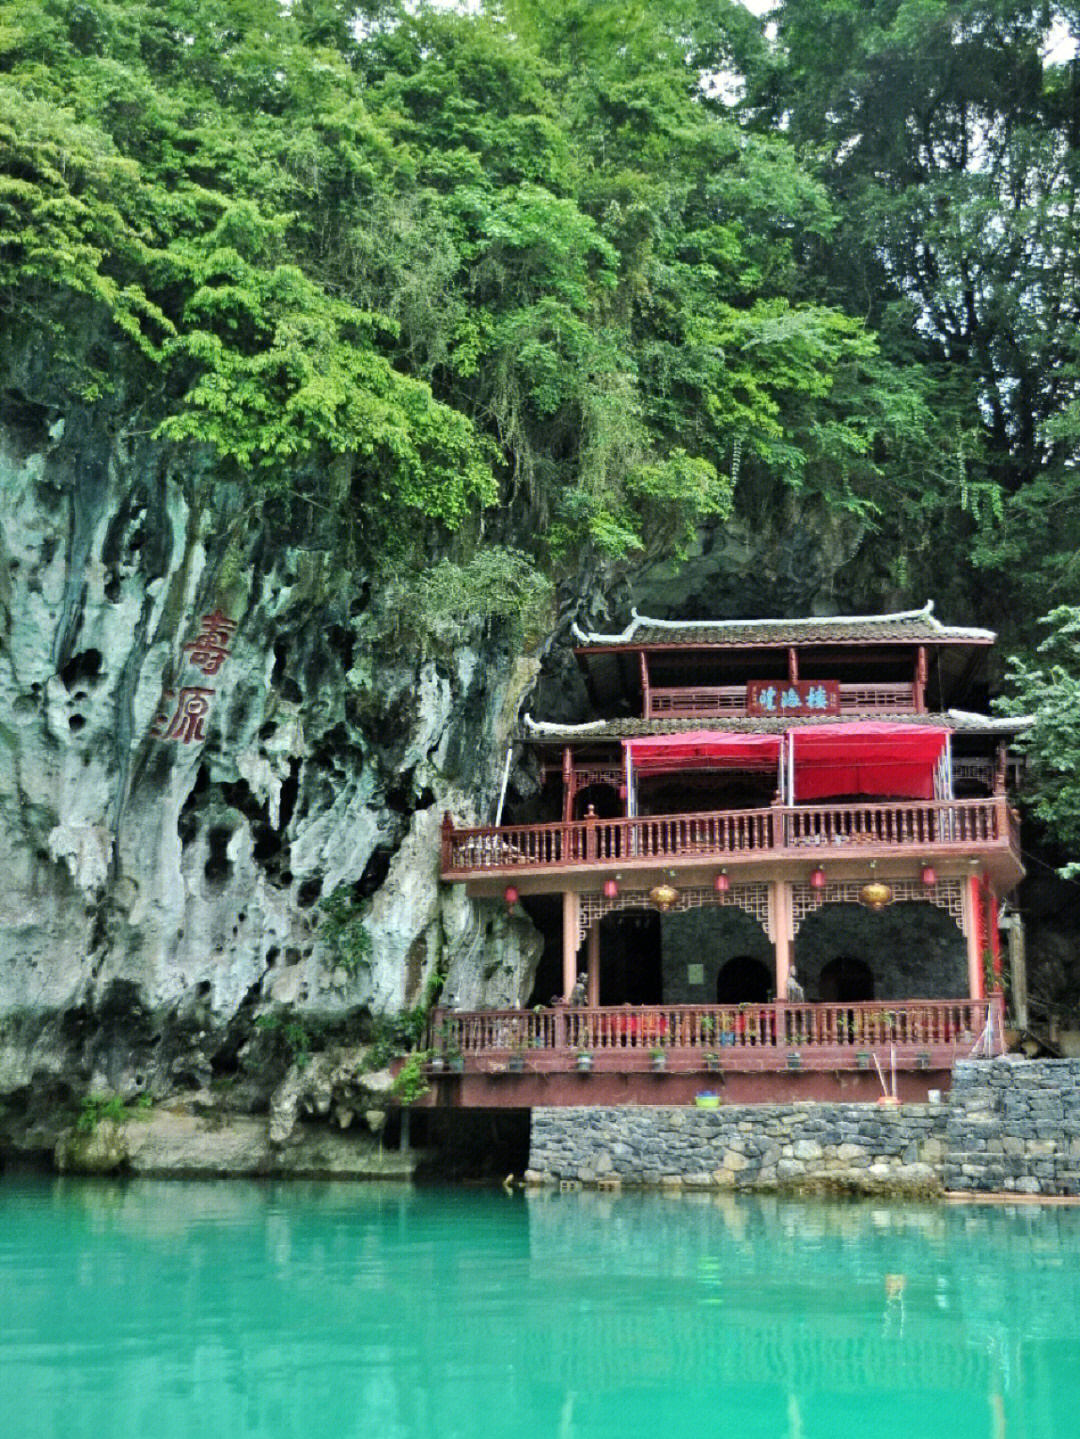 凤山三门海旅游景区是世界洞穴协会确认为世界上唯一的水游天坑的景区